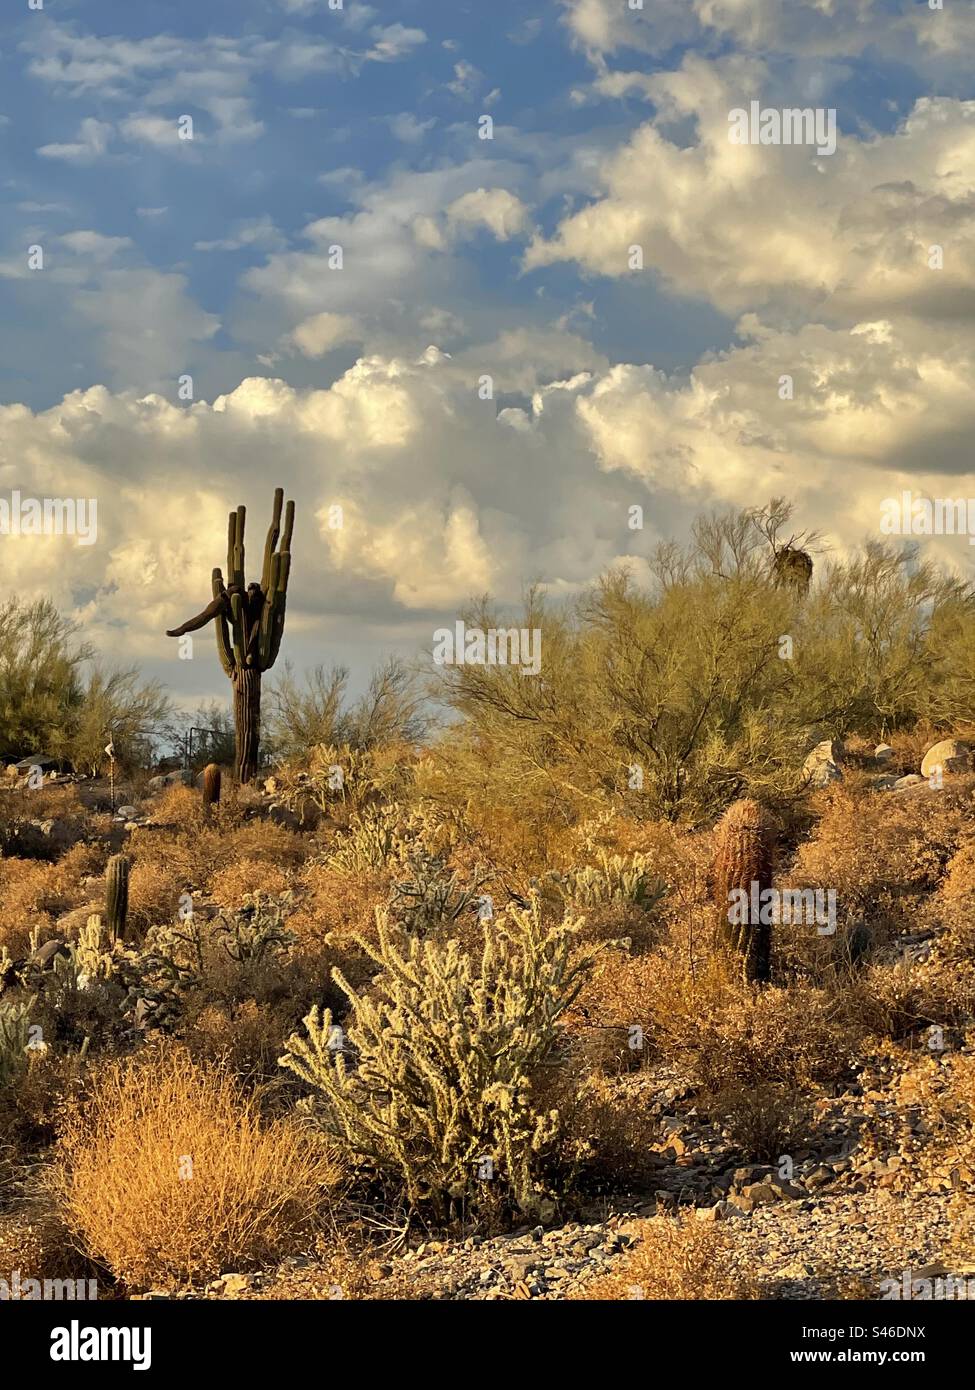 Vivez longtemps et prospérez Giant Saguaro, toile de fond dramatique de nuages de mousson juste avant le coucher du soleil, lumière dorée de l'heure, chollas, cactus de baril et buissons cassants séchés, désert de Sonoran, Phoenix, Arizona Banque D'Images